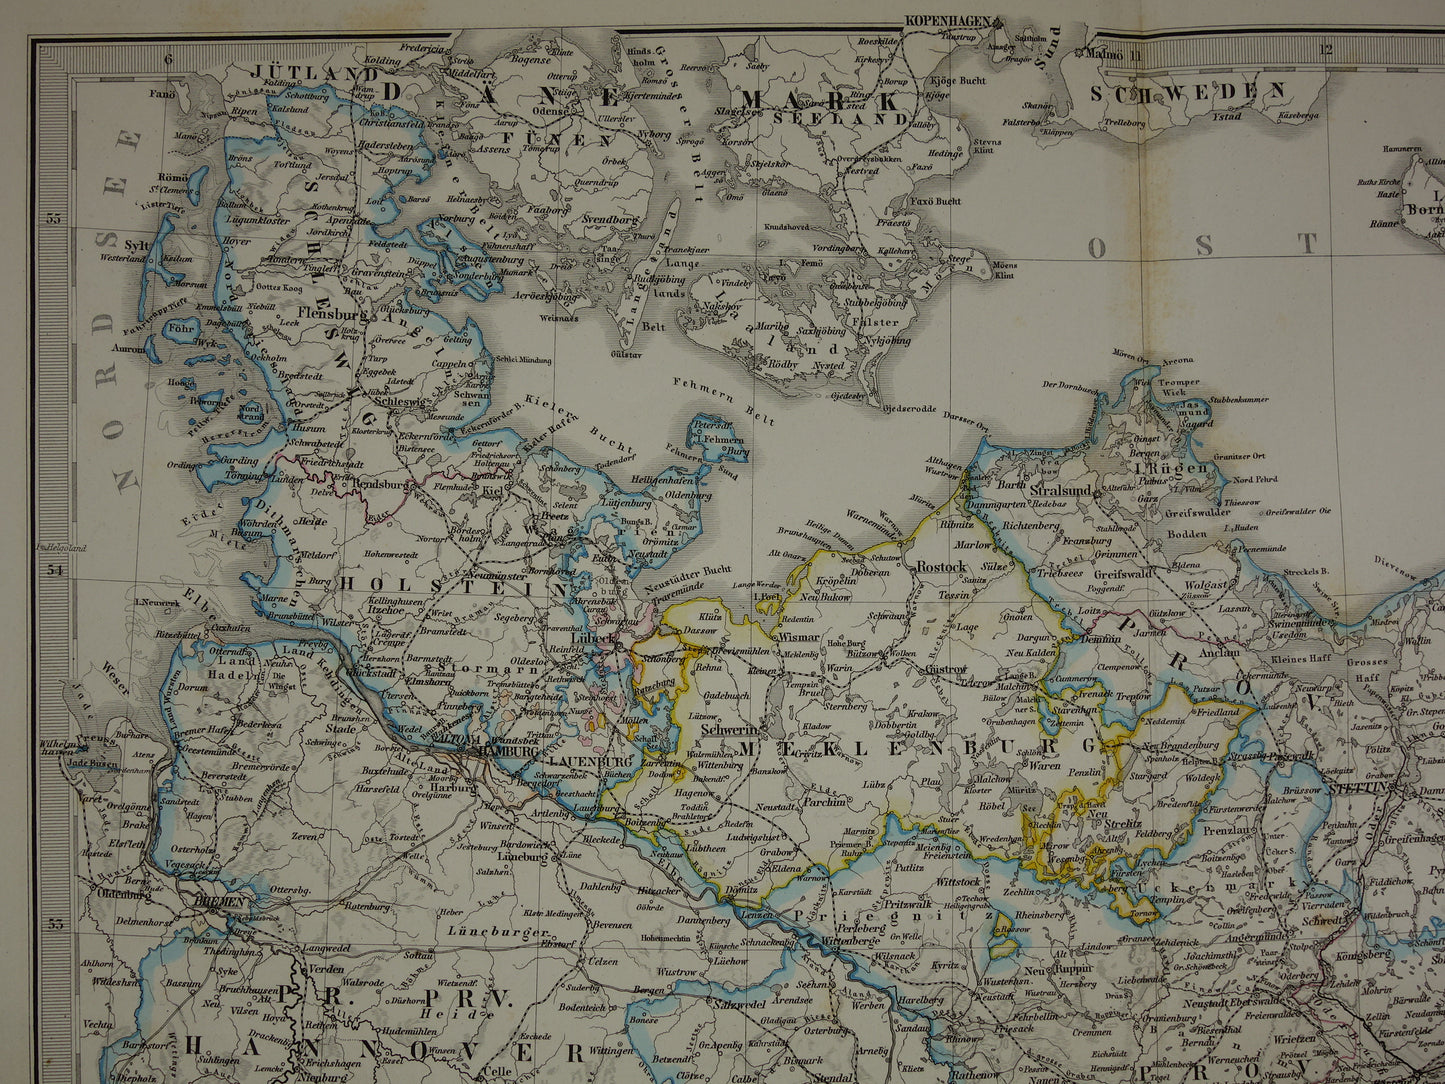 DUITSLAND Oude landkaart van noord-Duitsland uit 1872 originele 150+ jaar oude antieke kaart Berlijn Brandenburg